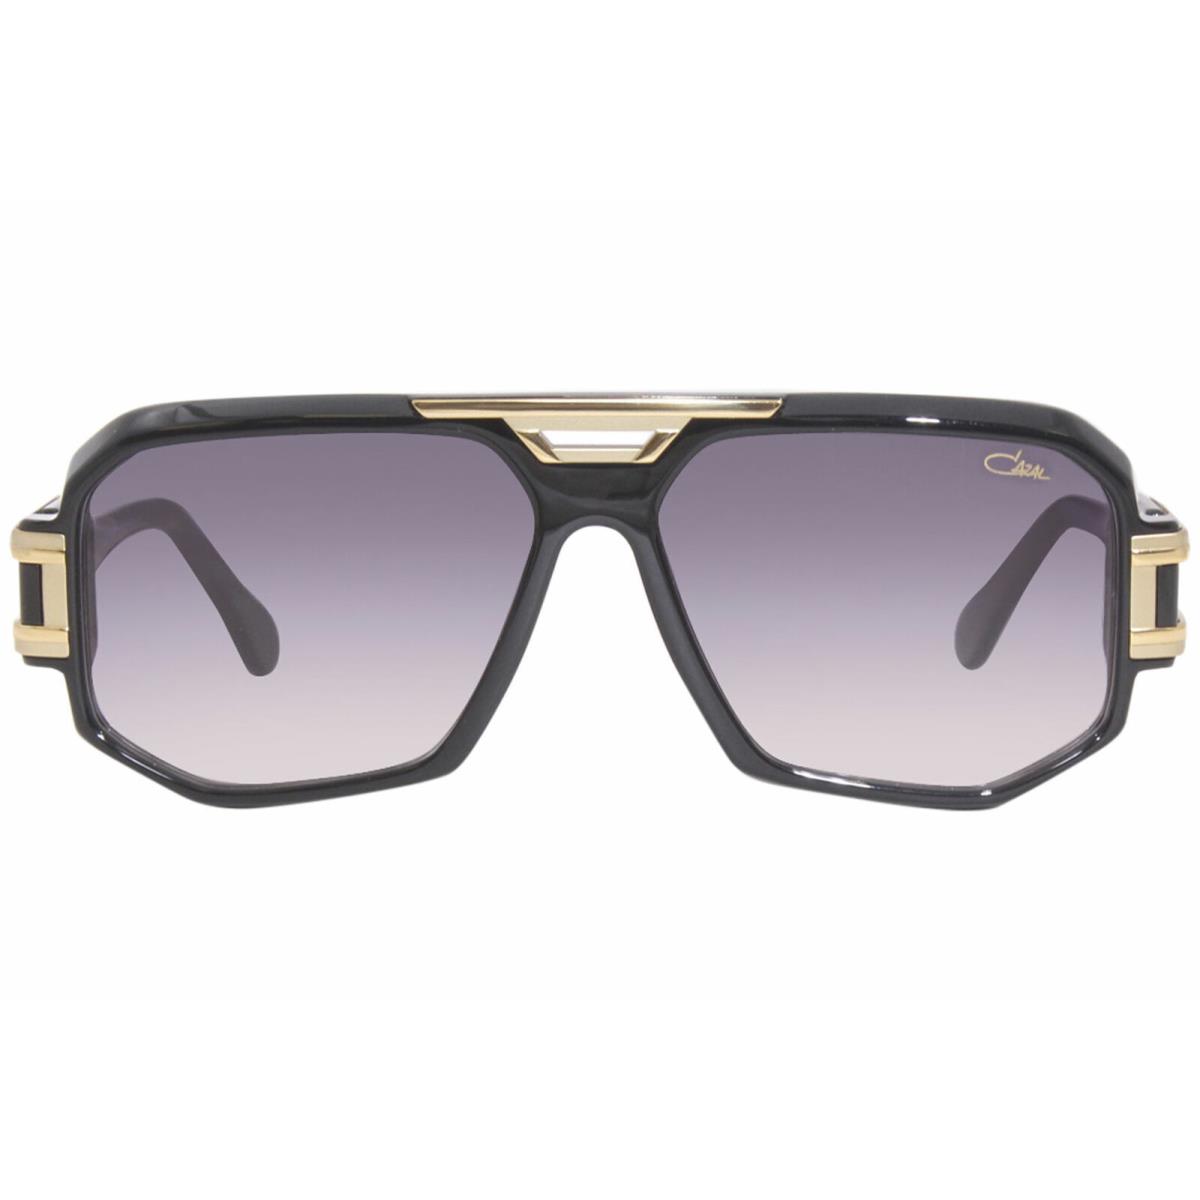 Cazal sunglasses  - Frame: Black/Gold, Lens: Gray 0